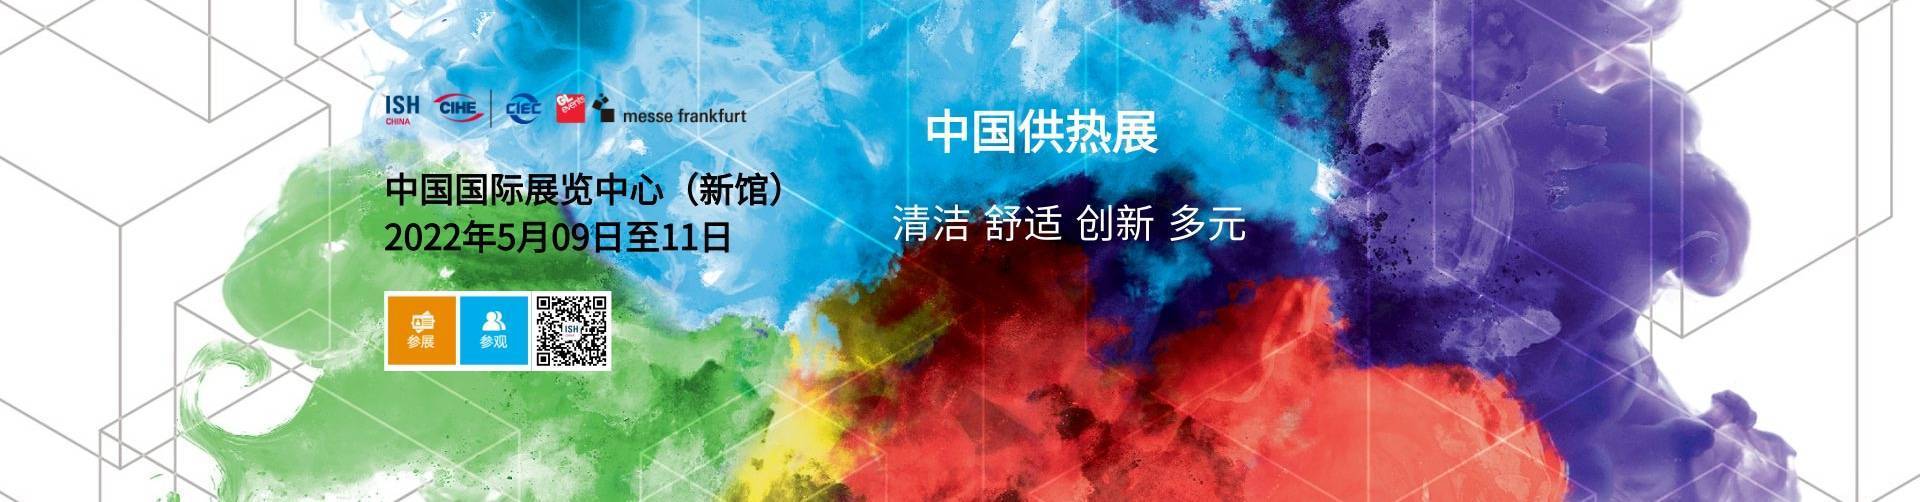 2021上海供热展&上海暖通展舒适家居系统展览会